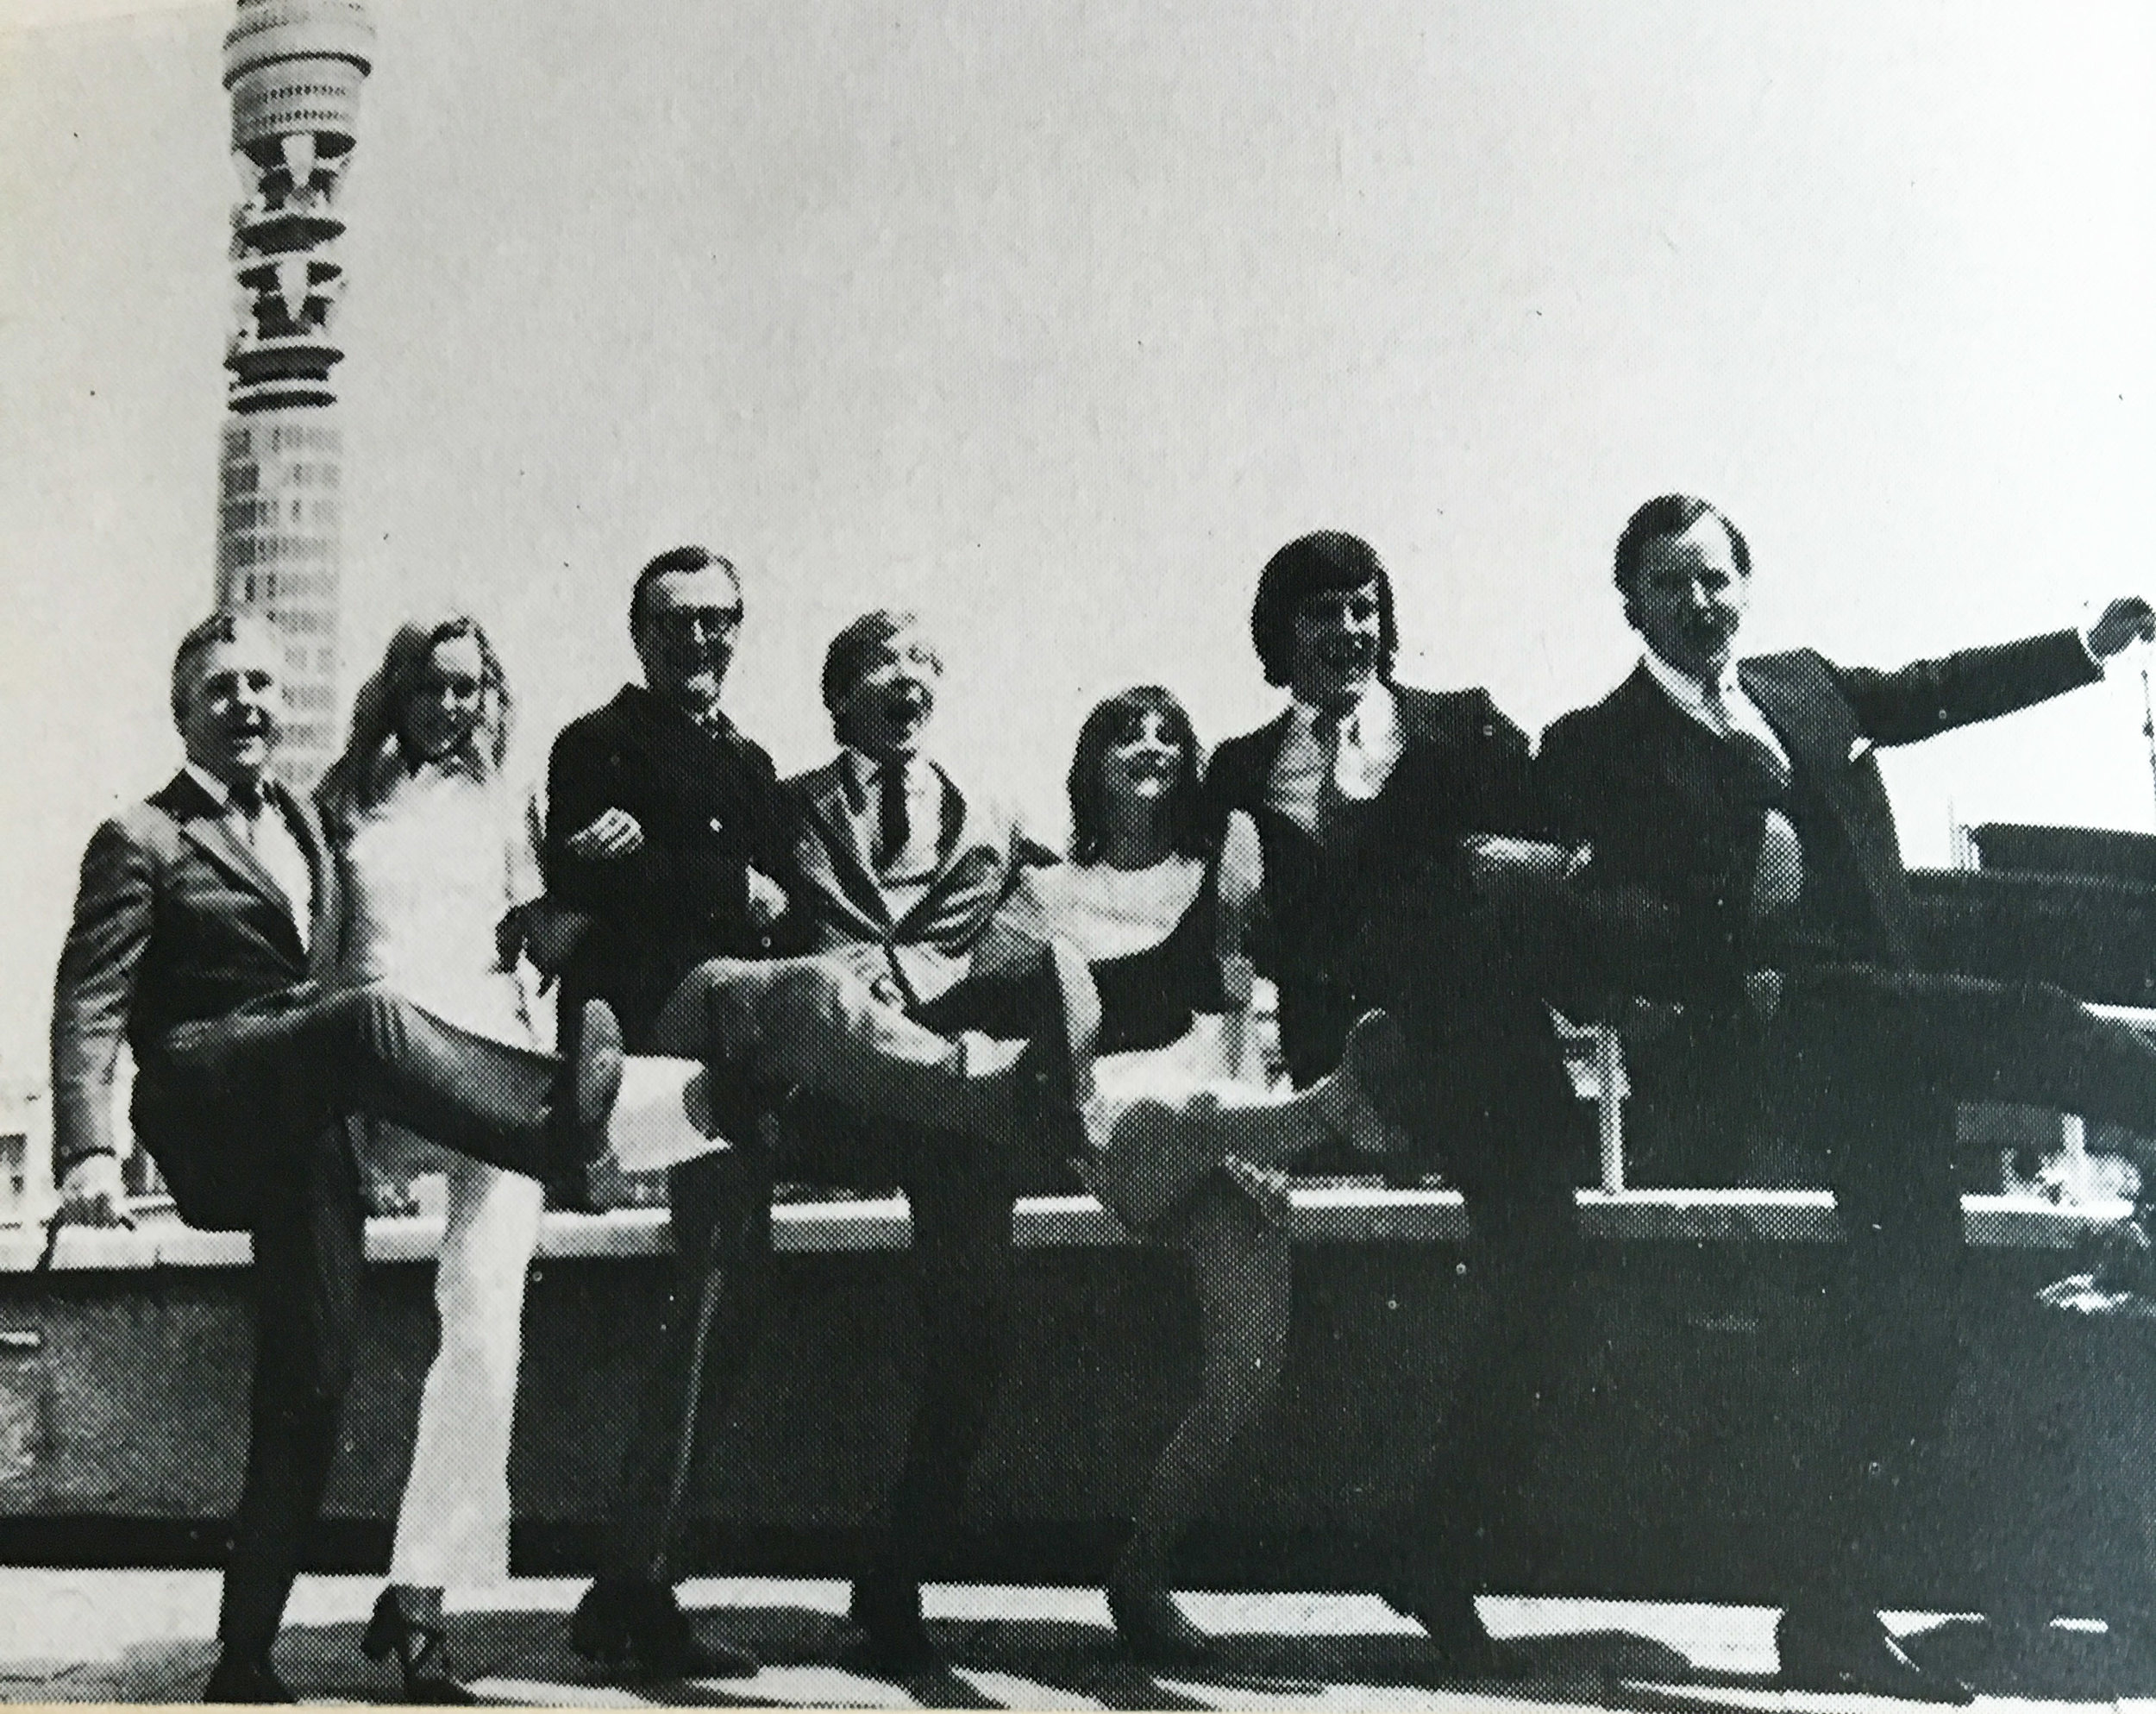 Kenneth More, Lisa Goddard, Cyril Fletcher, Kenneth Williams, Liz Gebhardt, Gyles Brandreth and Nicholas Parsons launching BBC Radio 4's summer season in 1971